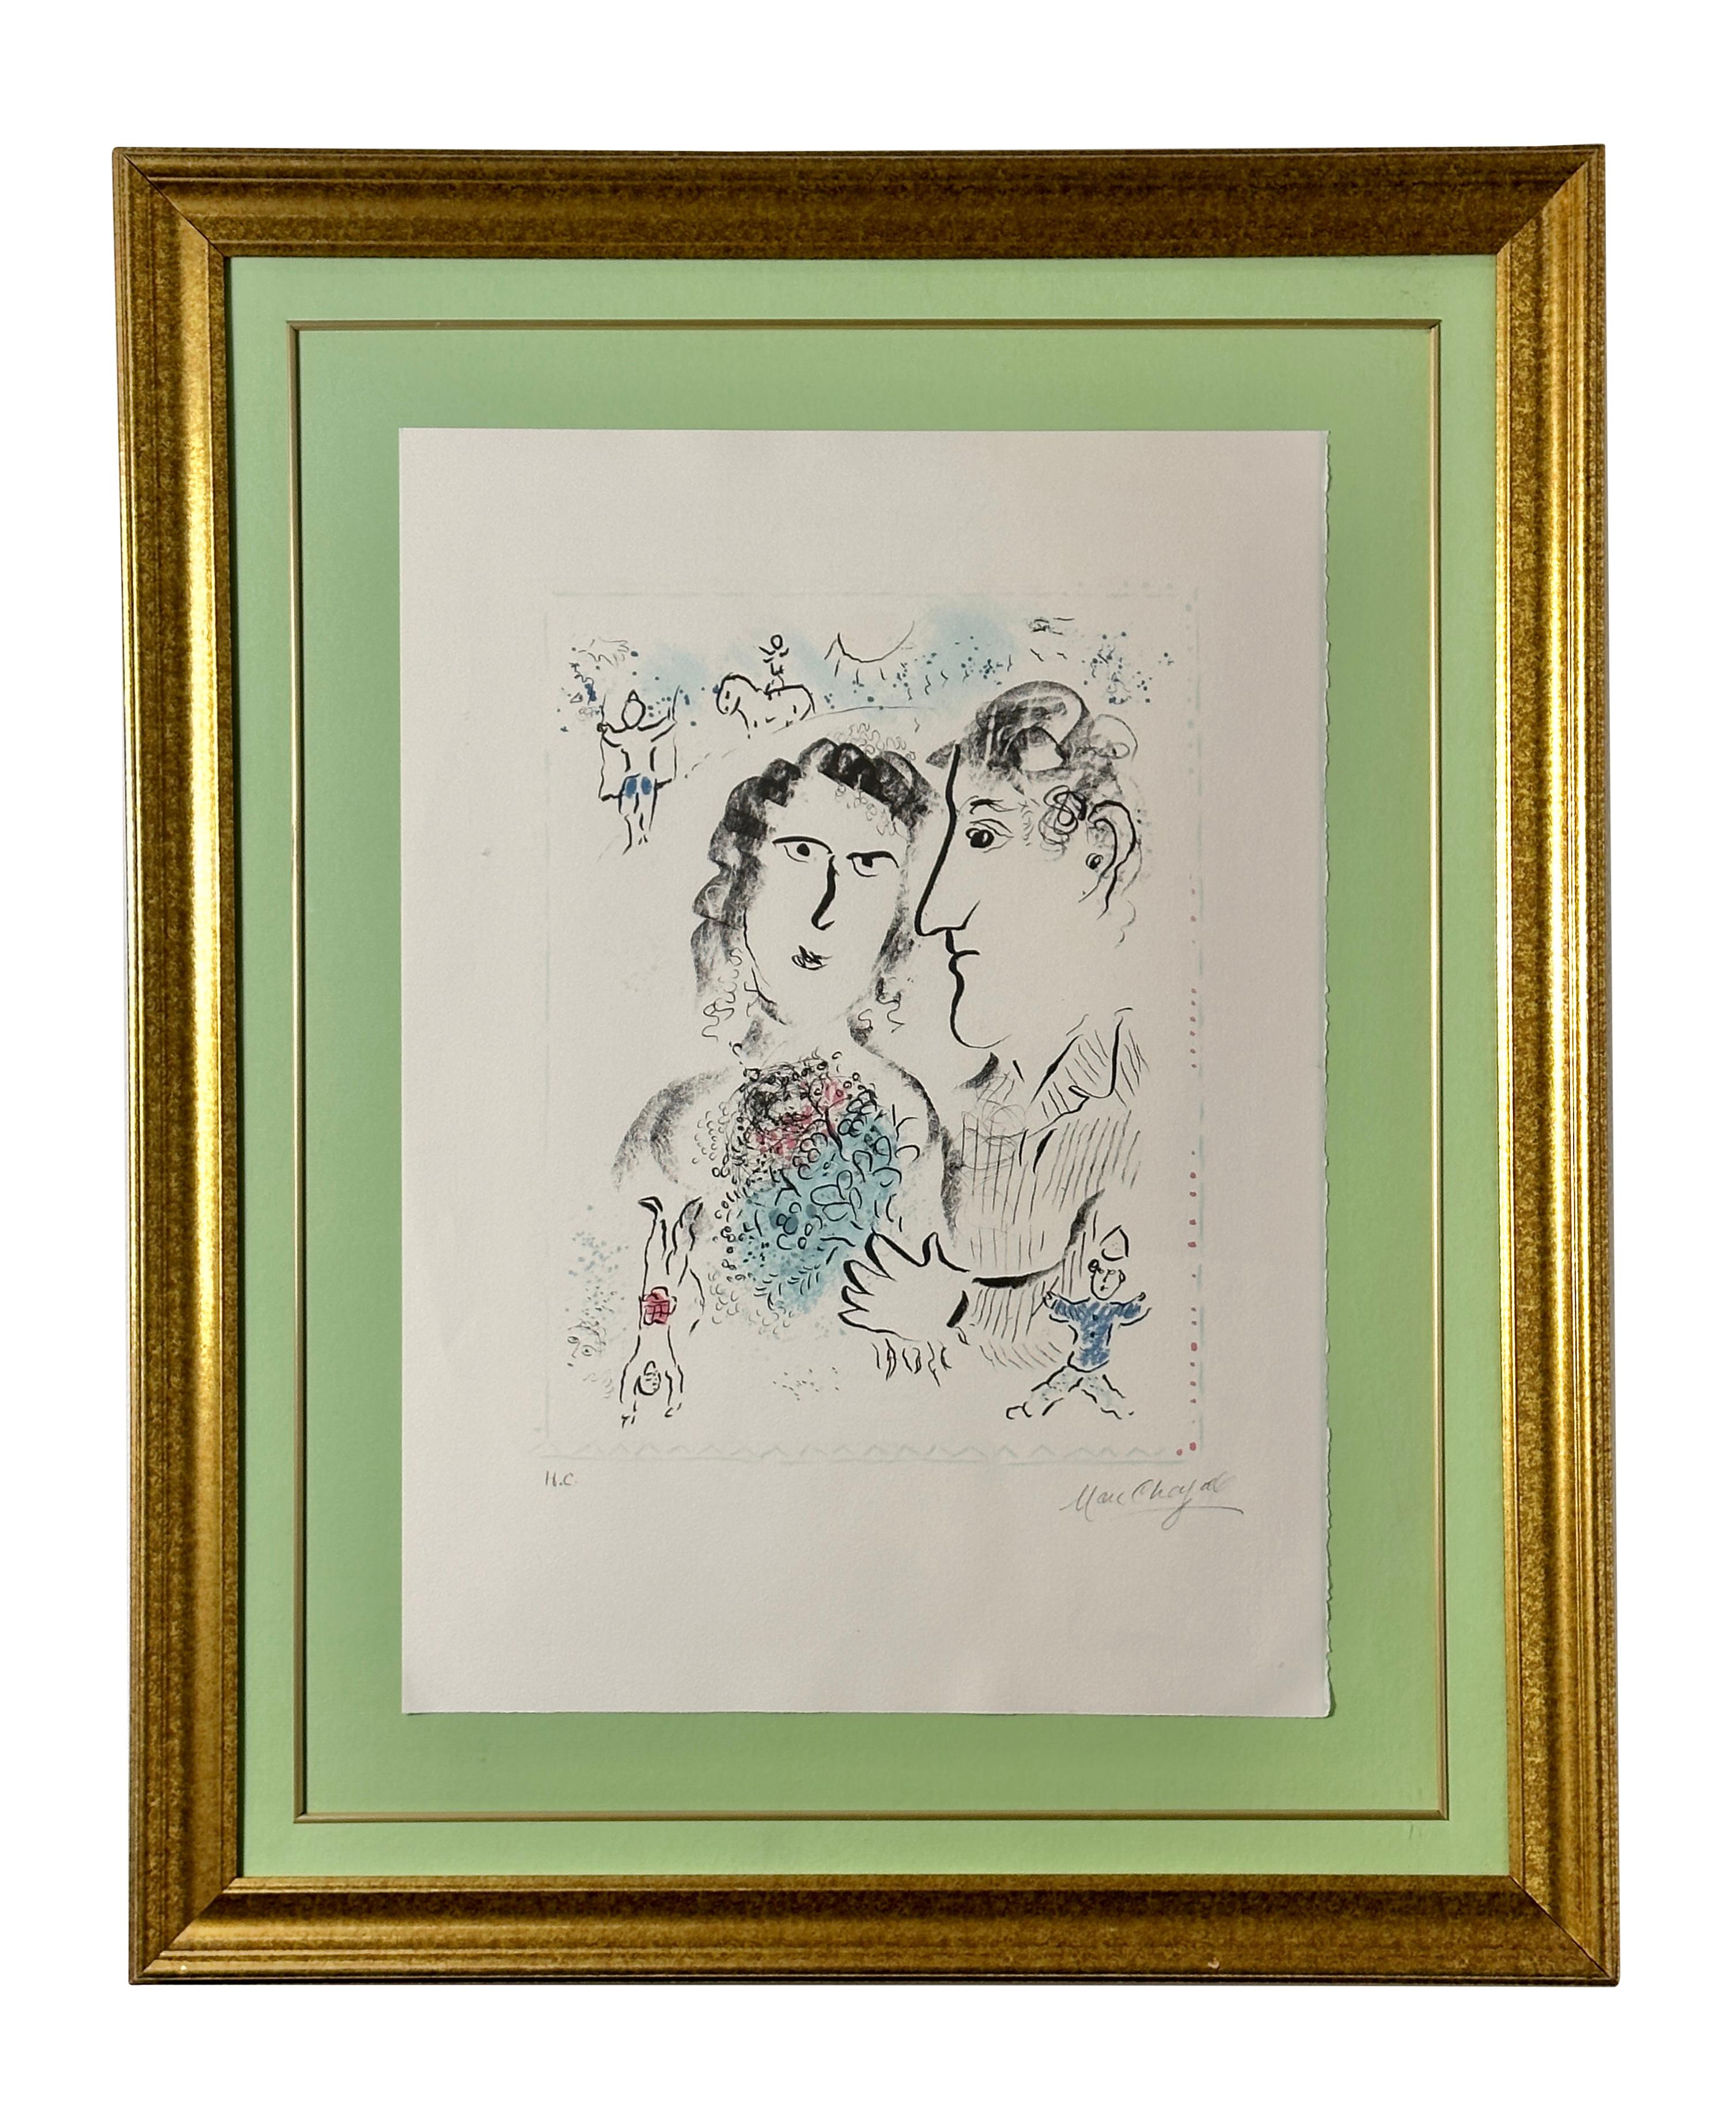 Marc Chagall - Lithographie signée à la main - Certificat de fiançailles d'artiste au cirque 1983 
Chagall Fiançailles au cirque, 1983 est une représentation ludique et amoureuse de l'adoration humaine. En mêlant fantaisie et spiritualité, Chagall